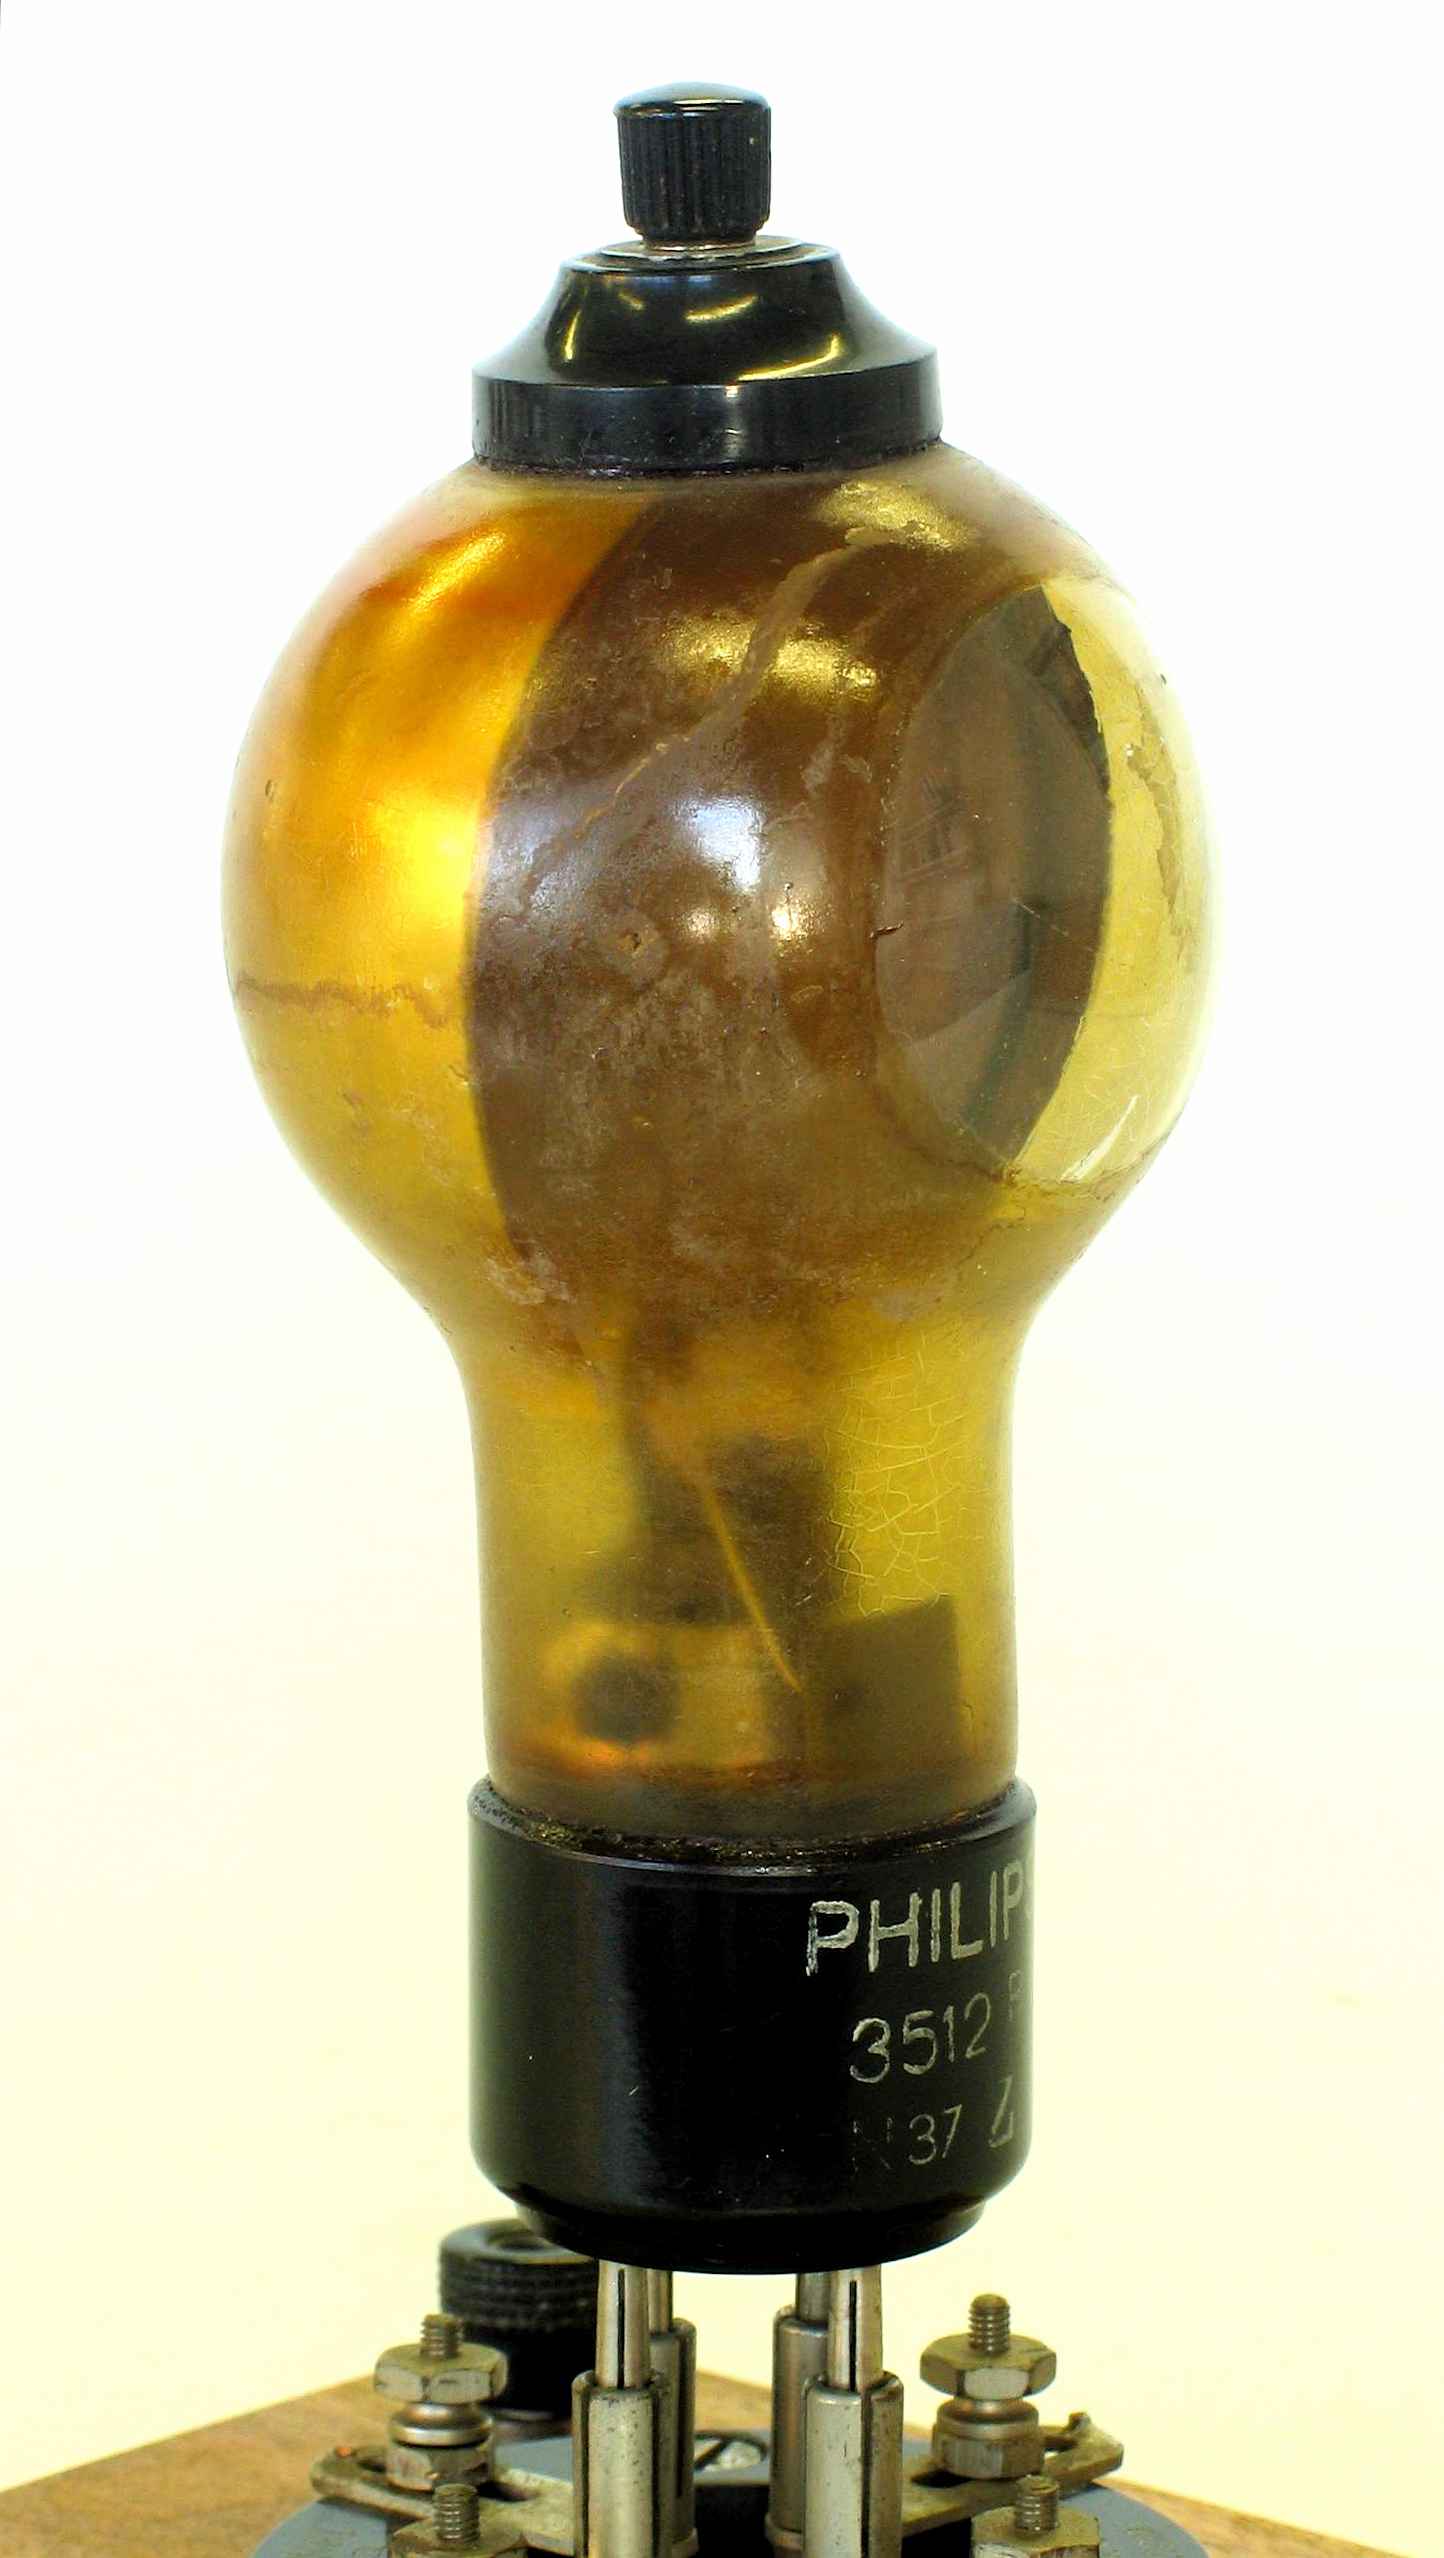 Cellule photoélectrique à vide
(Philips 3512)